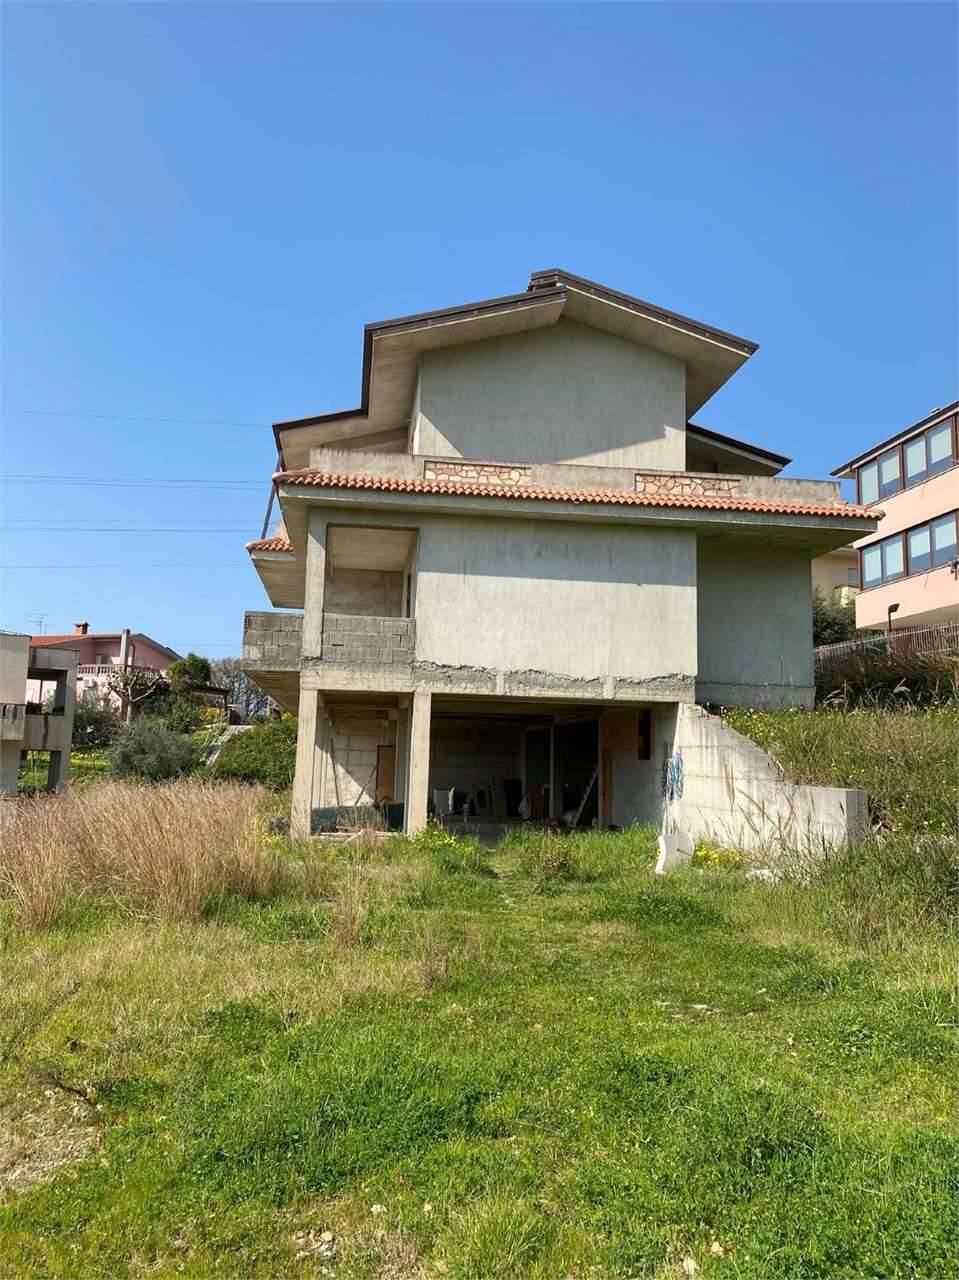 Villa in Vendita a Belvedere Marittimo